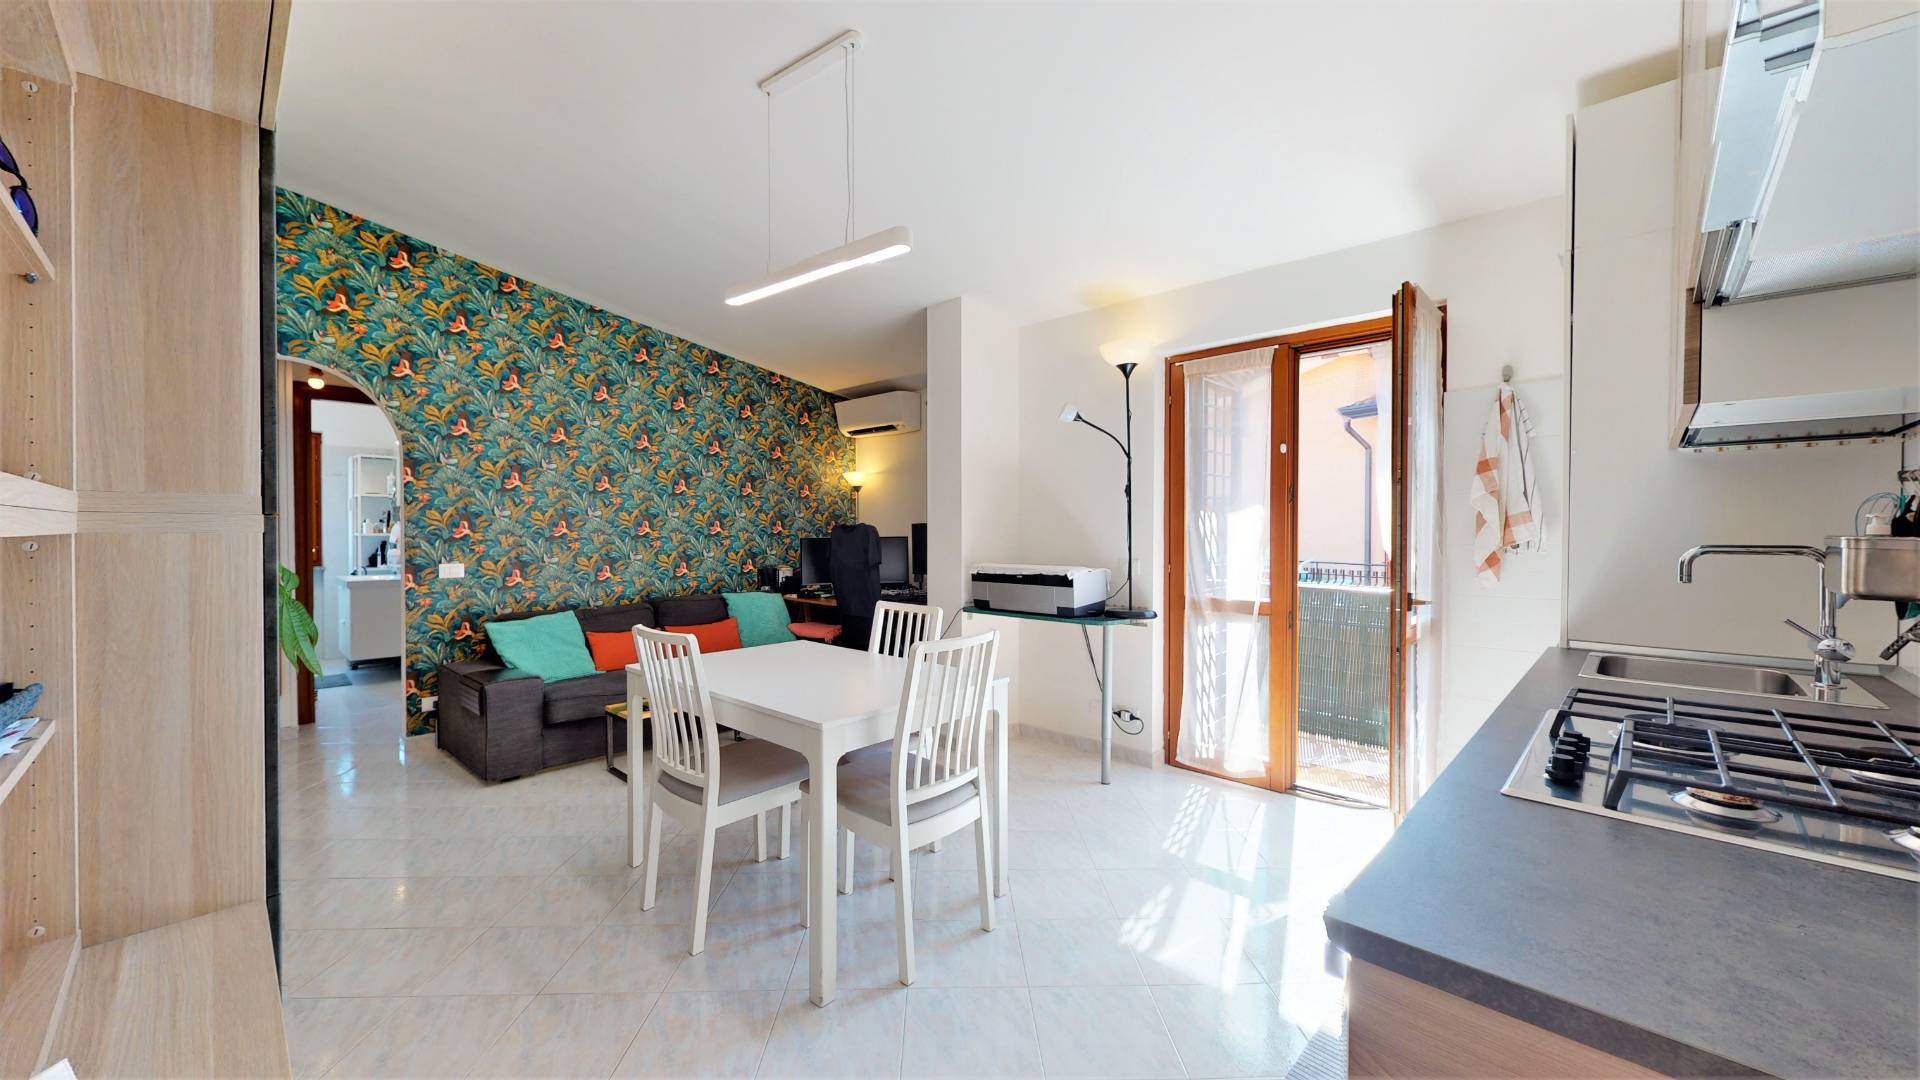 Appartamento in vendita a Fonte Nuova, 2 locali, prezzo € 109.000 | CambioCasa.it